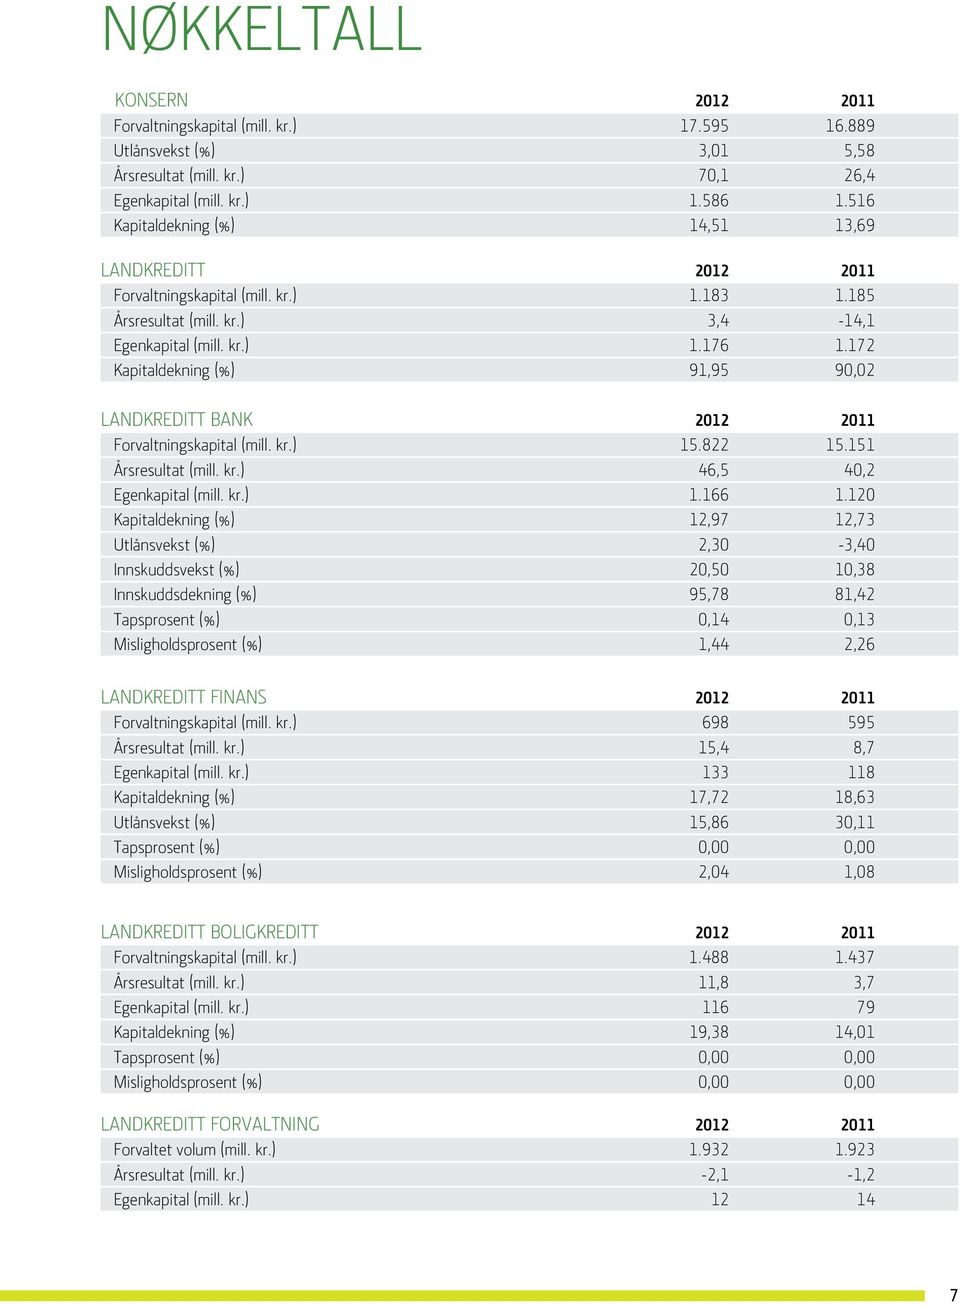 172 Kapitaldekning (%) 91,95 90,02 Landkreditt Bank 2012 2011 Forvaltningskapital (mill. kr.) 15.822 15.151 Årsresultat (mill. kr.) 46,5 40,2 Egenkapital (mill. kr.) 1.166 1.